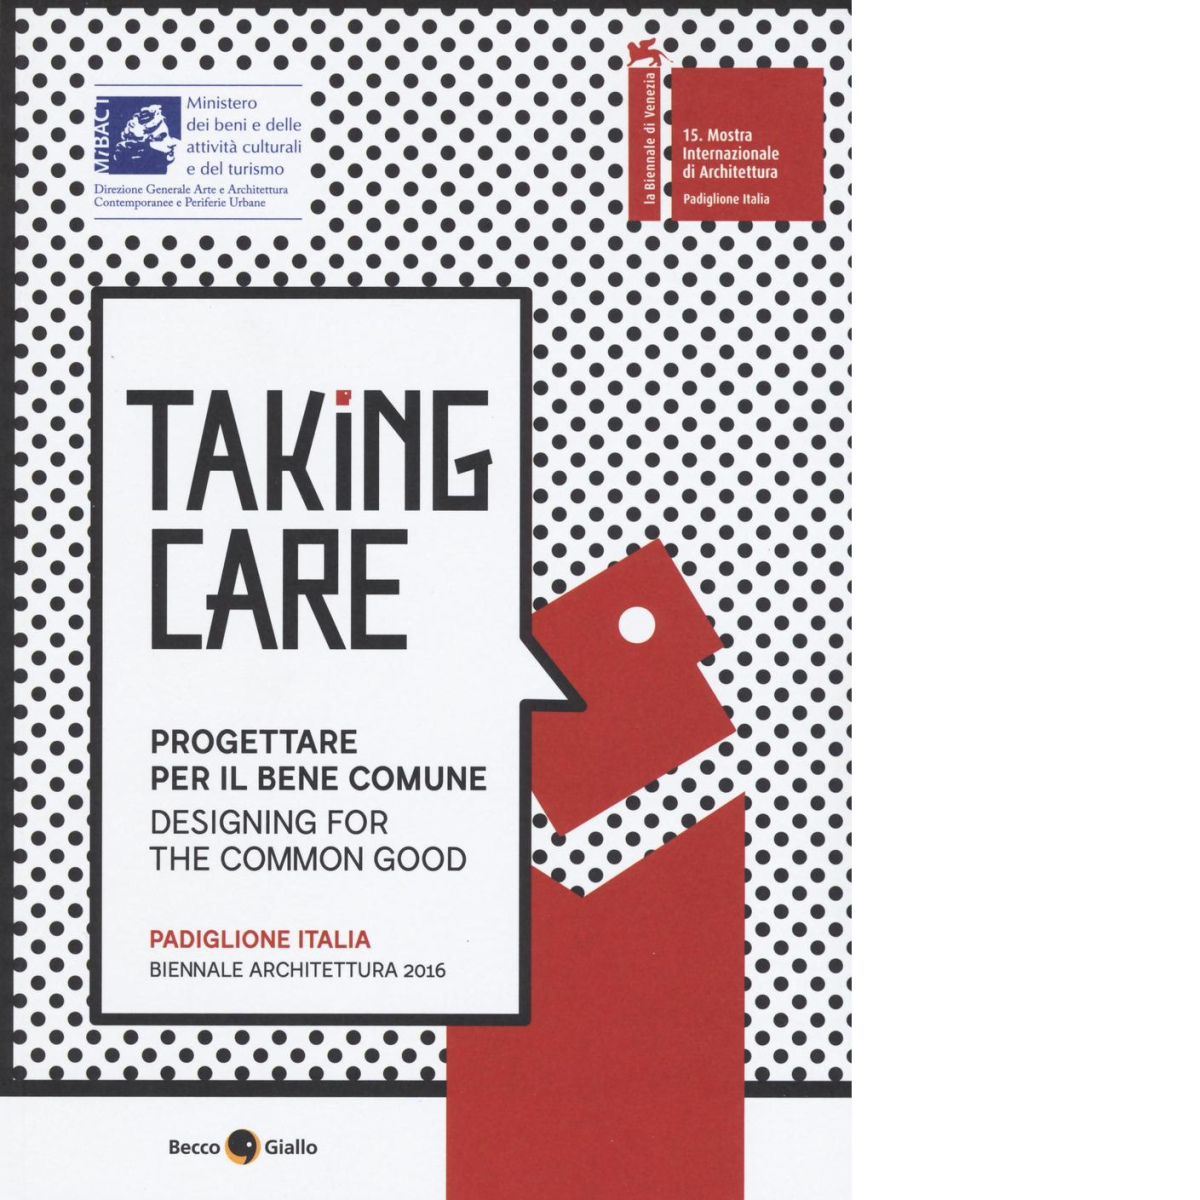 Taking care. Progettare per il bene comune: Padiglione Italia, Biennale Architet